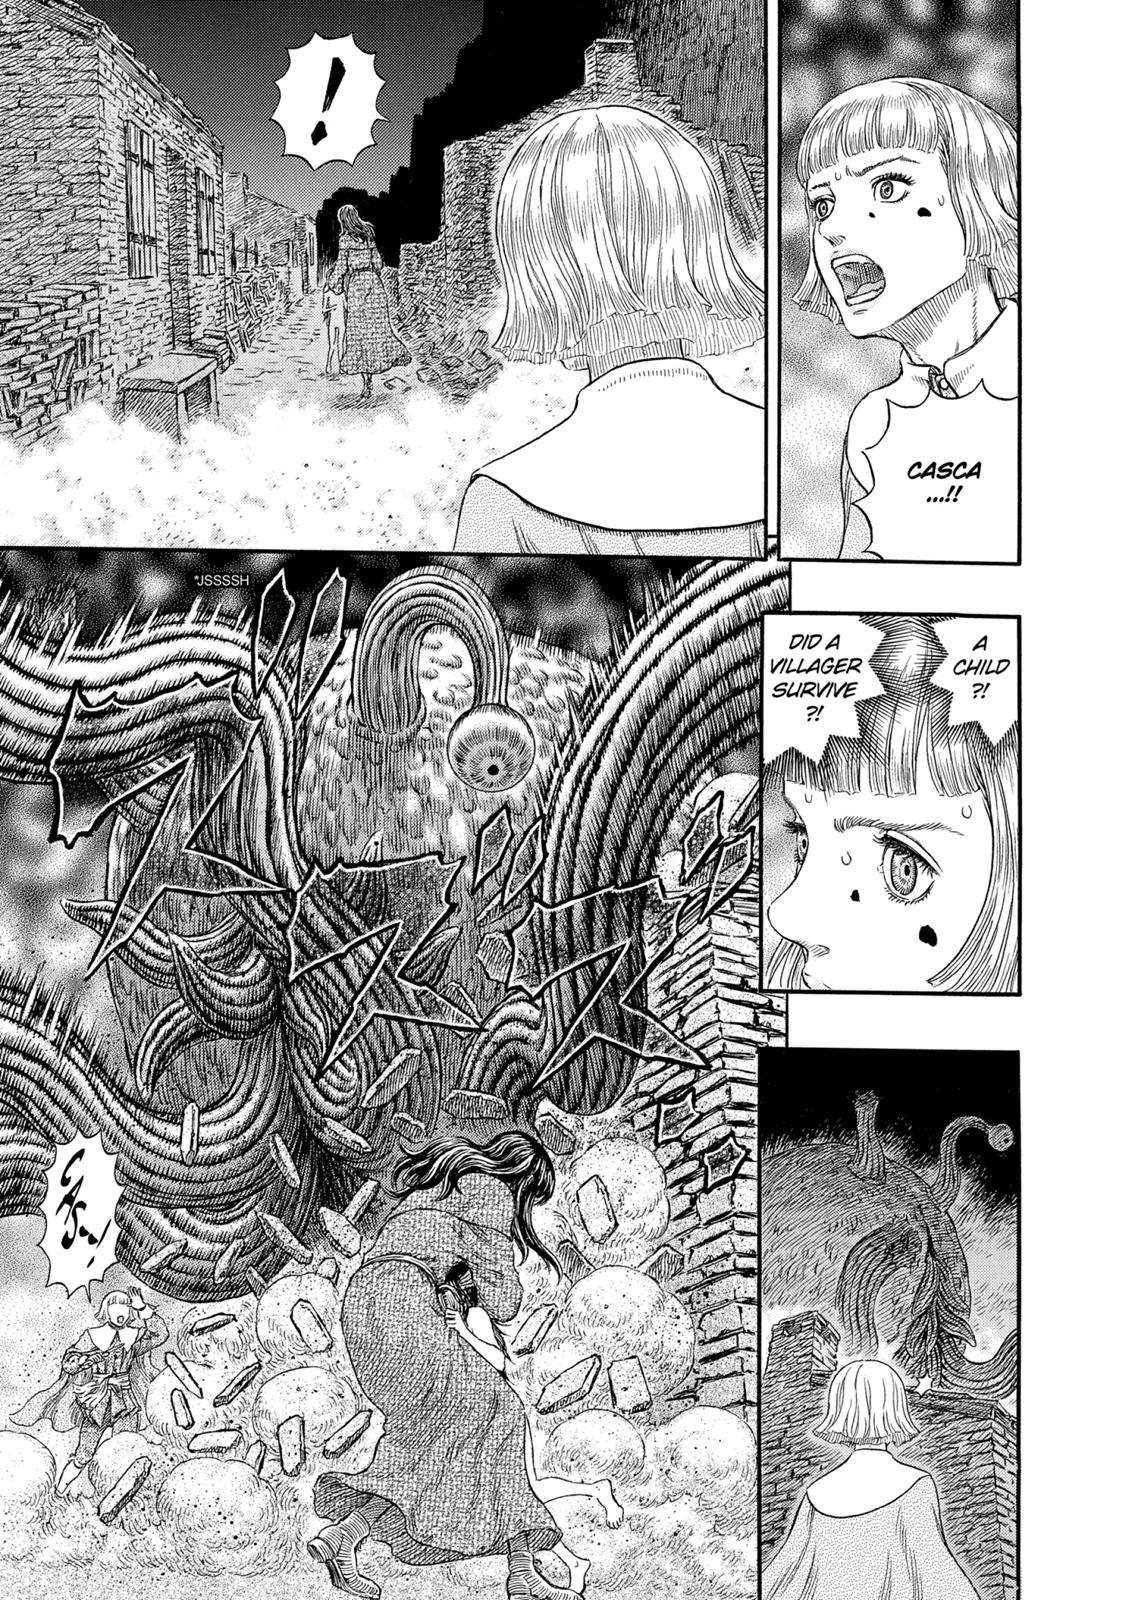 Berserk Manga Chapter 316 image 27